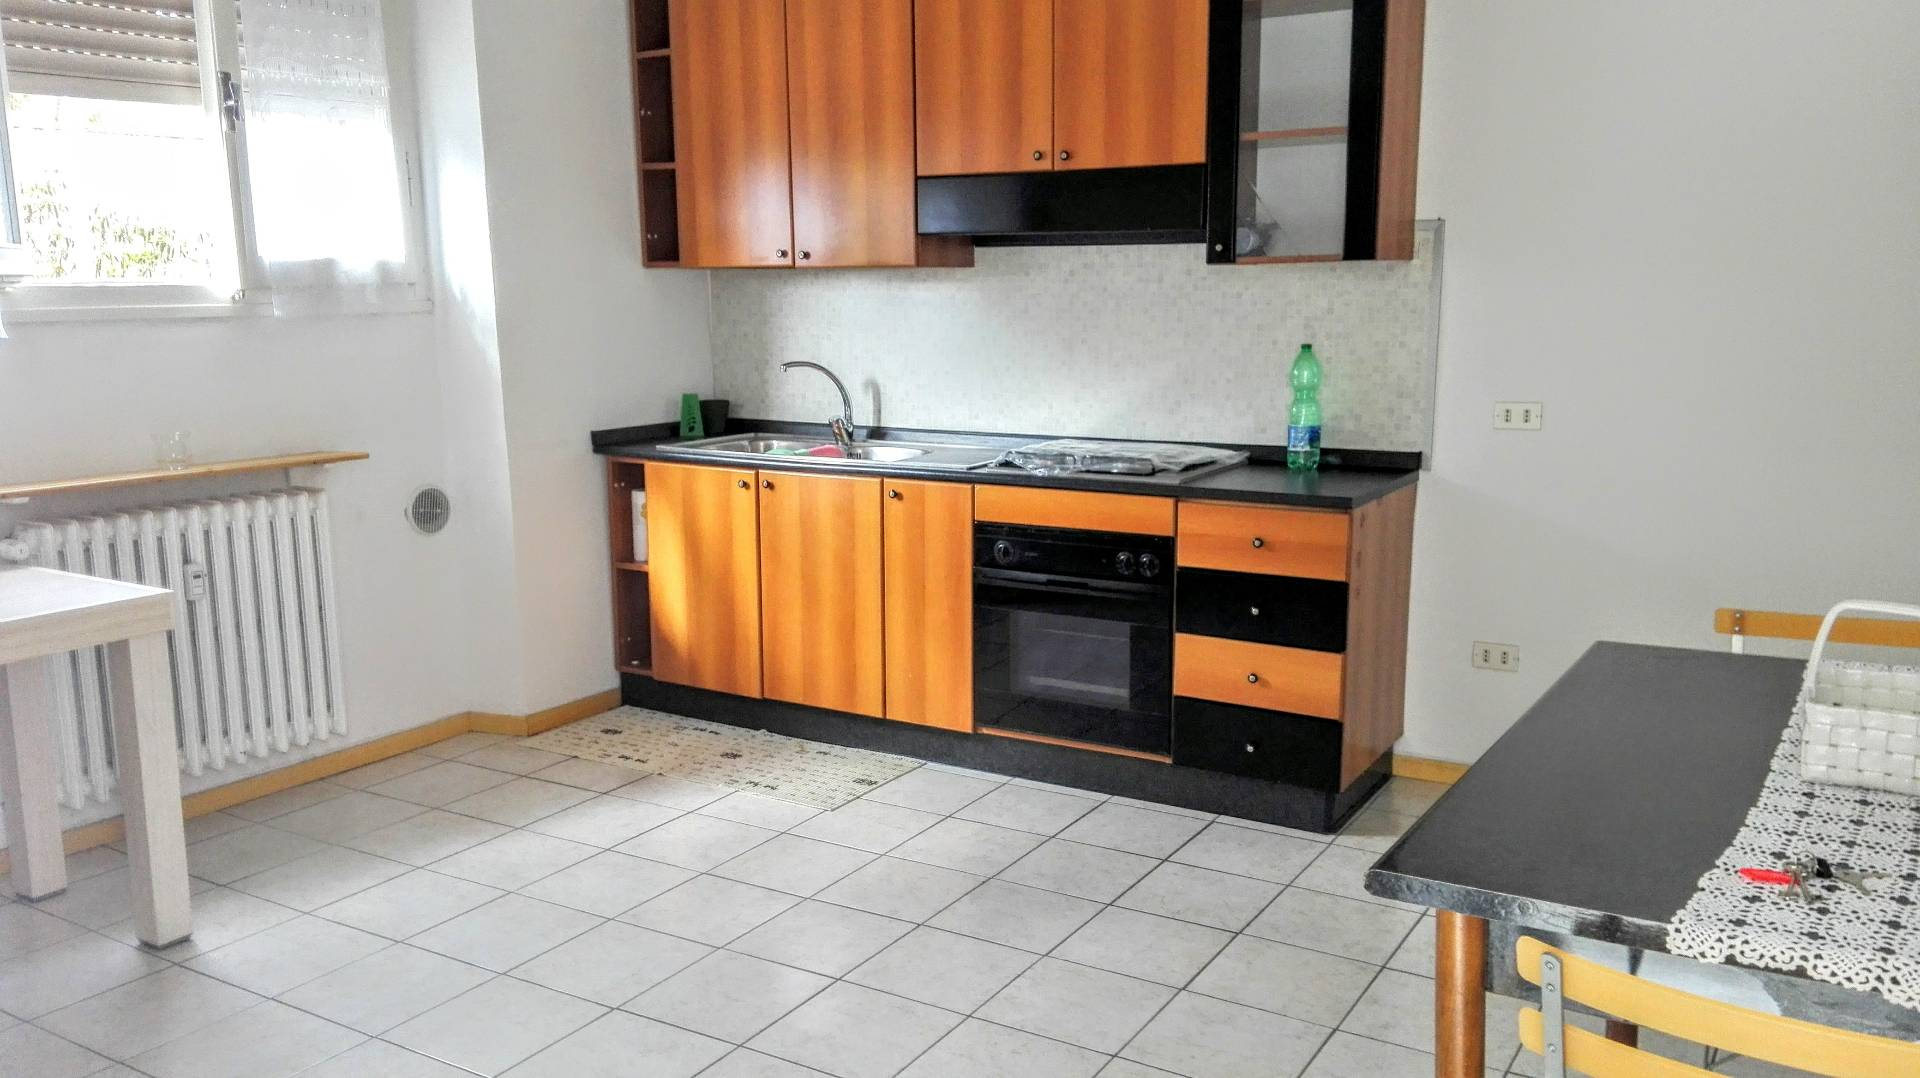 Appartamento in vendita a Casale Monferrato, 2 locali, prezzo € 25.000 | CambioCasa.it